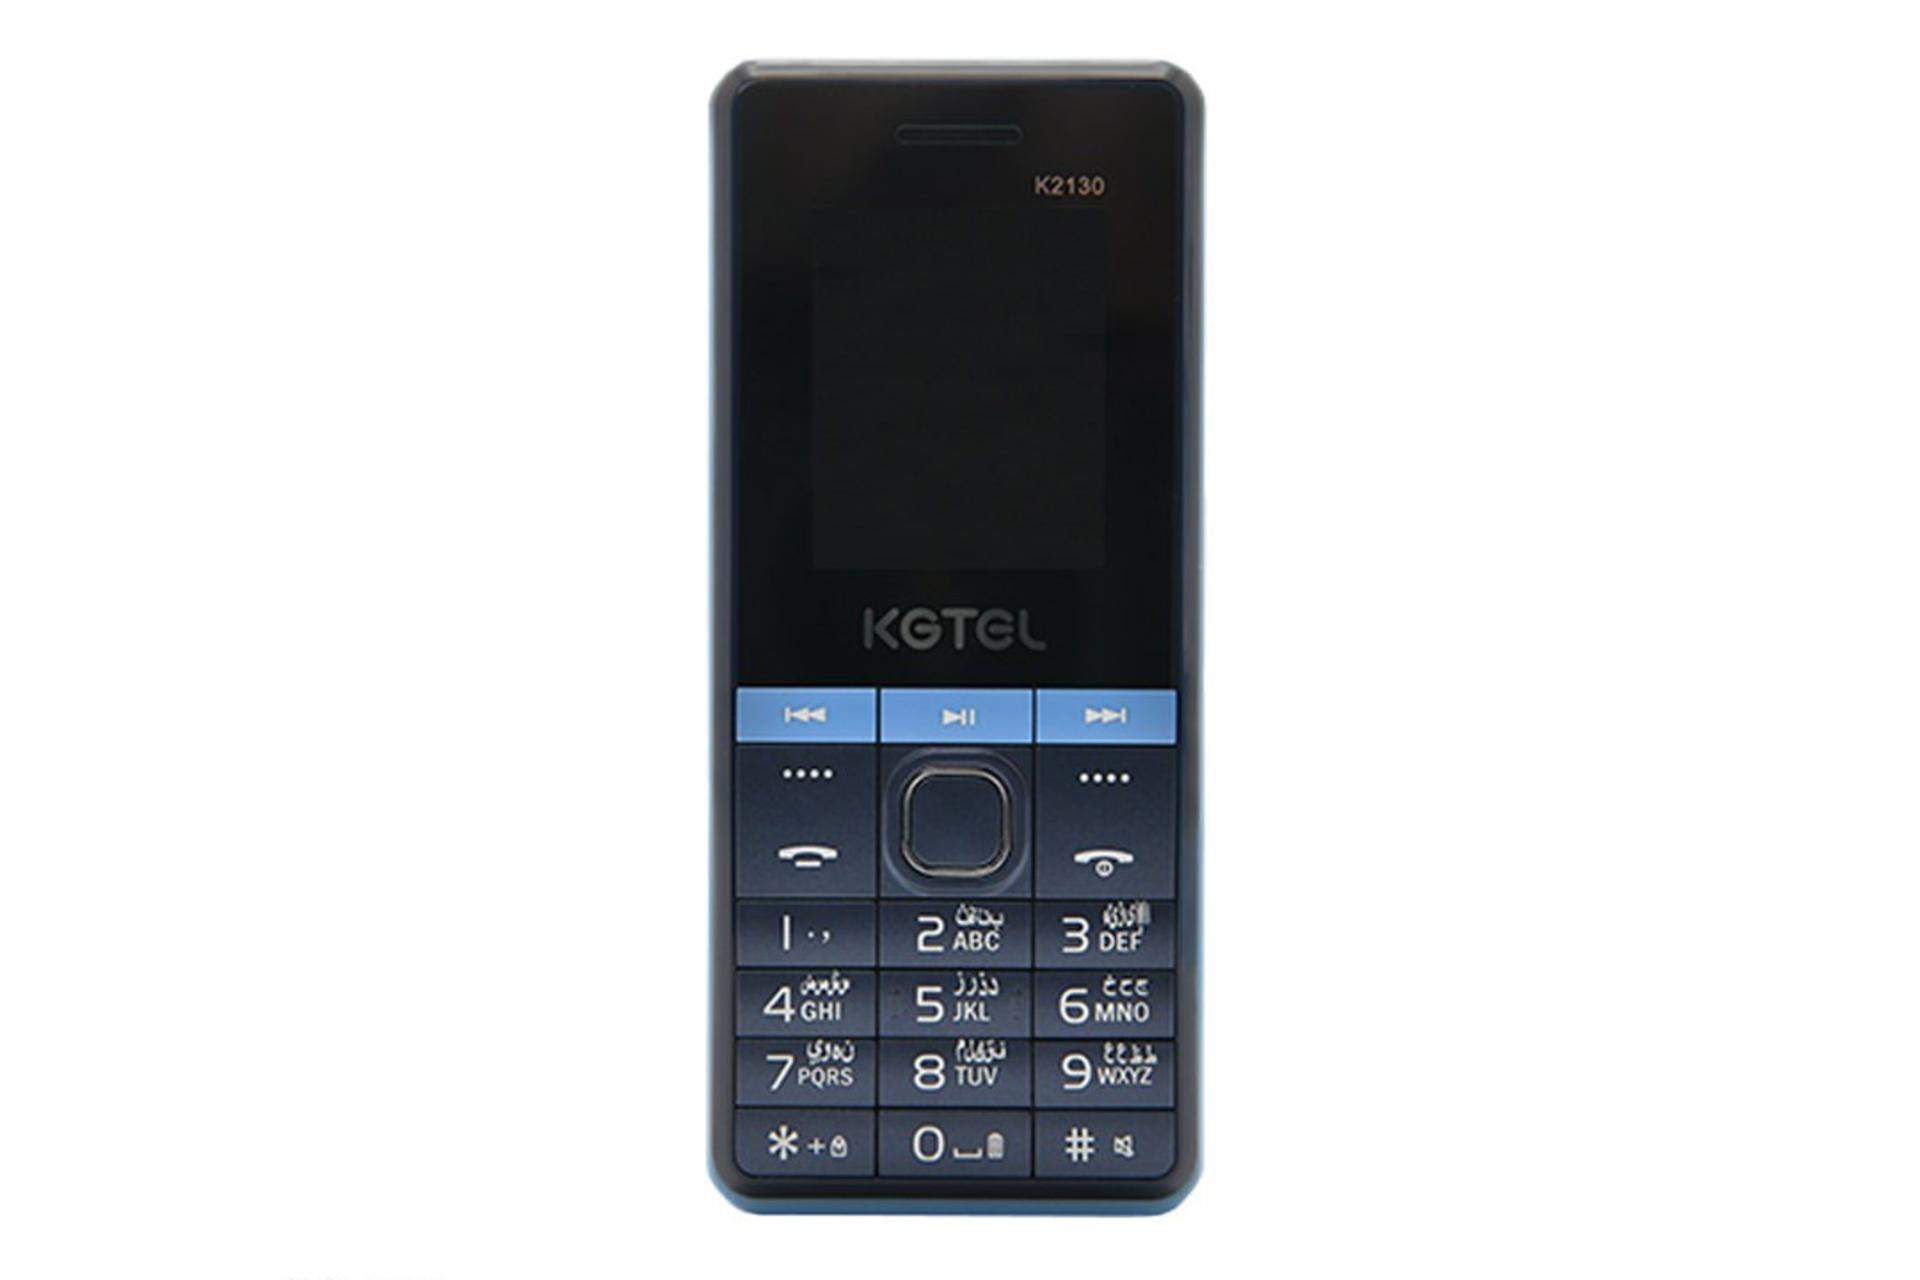 گوشی موبایل کاجیتل KGTEL K2130